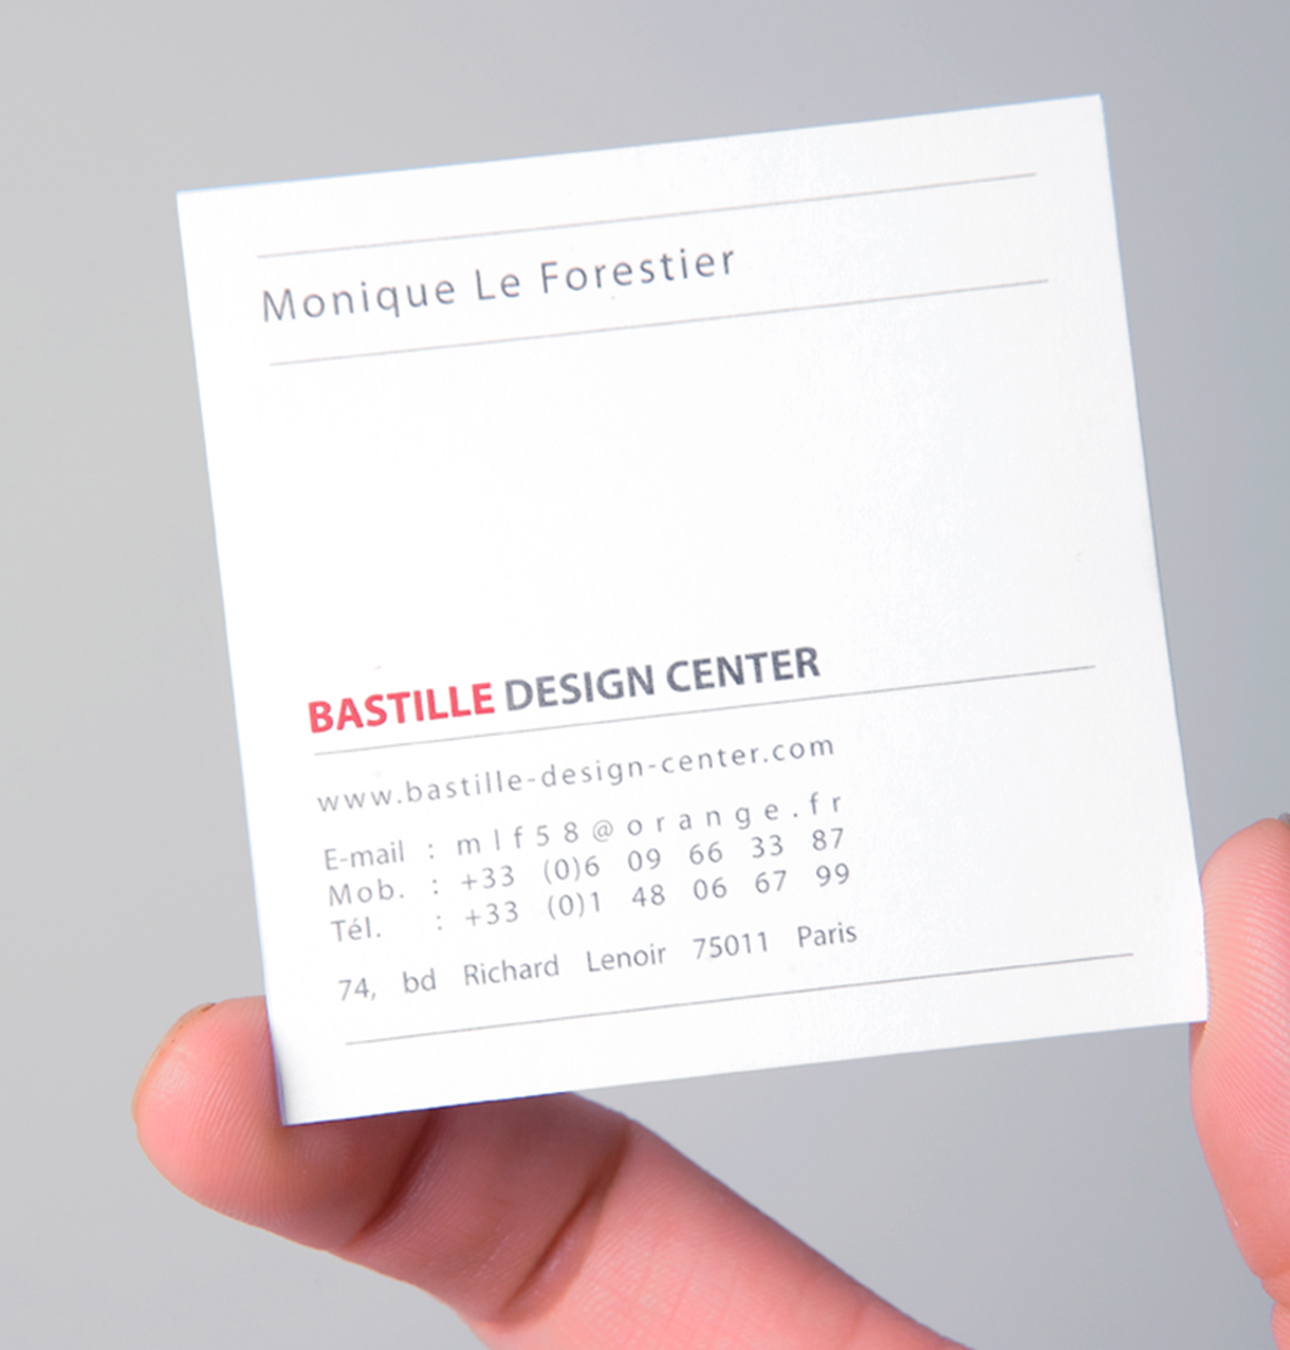 Bastille design center